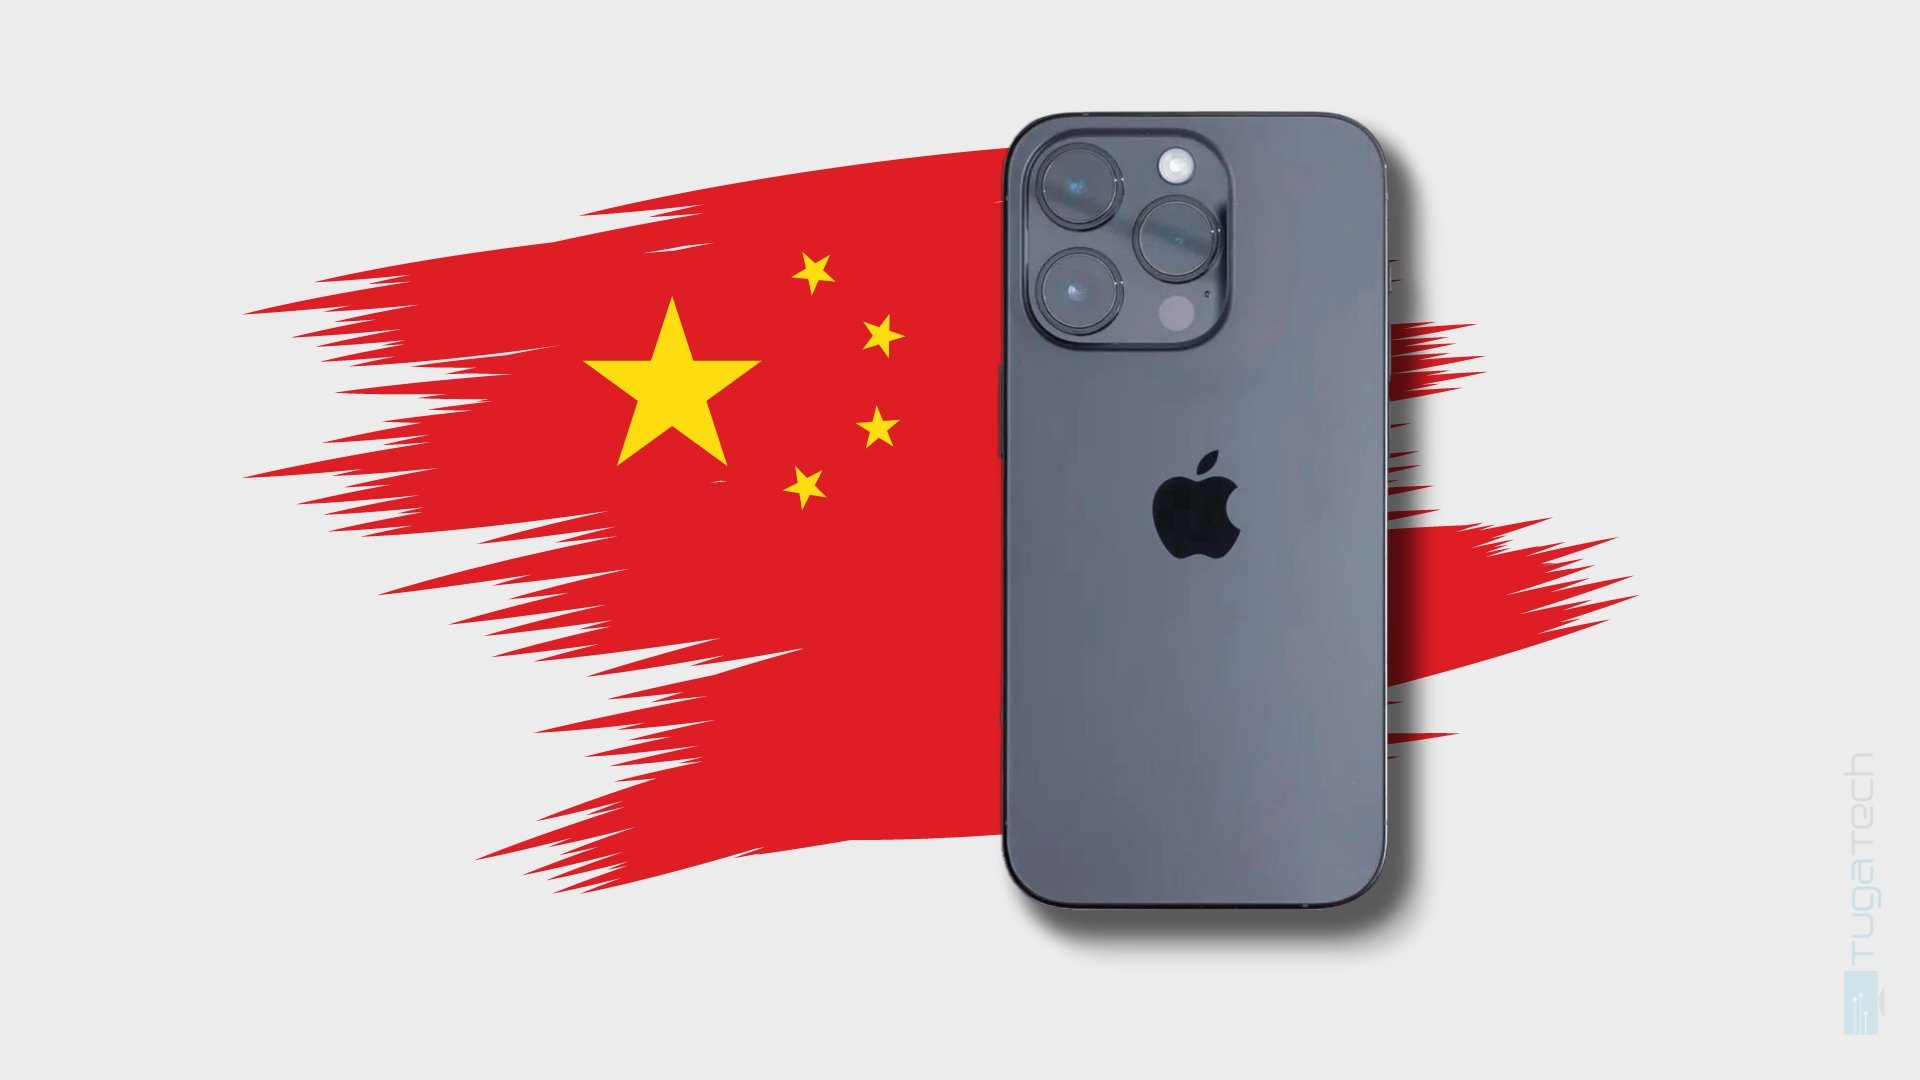 Apple regista queda de vendas do iPhone na China